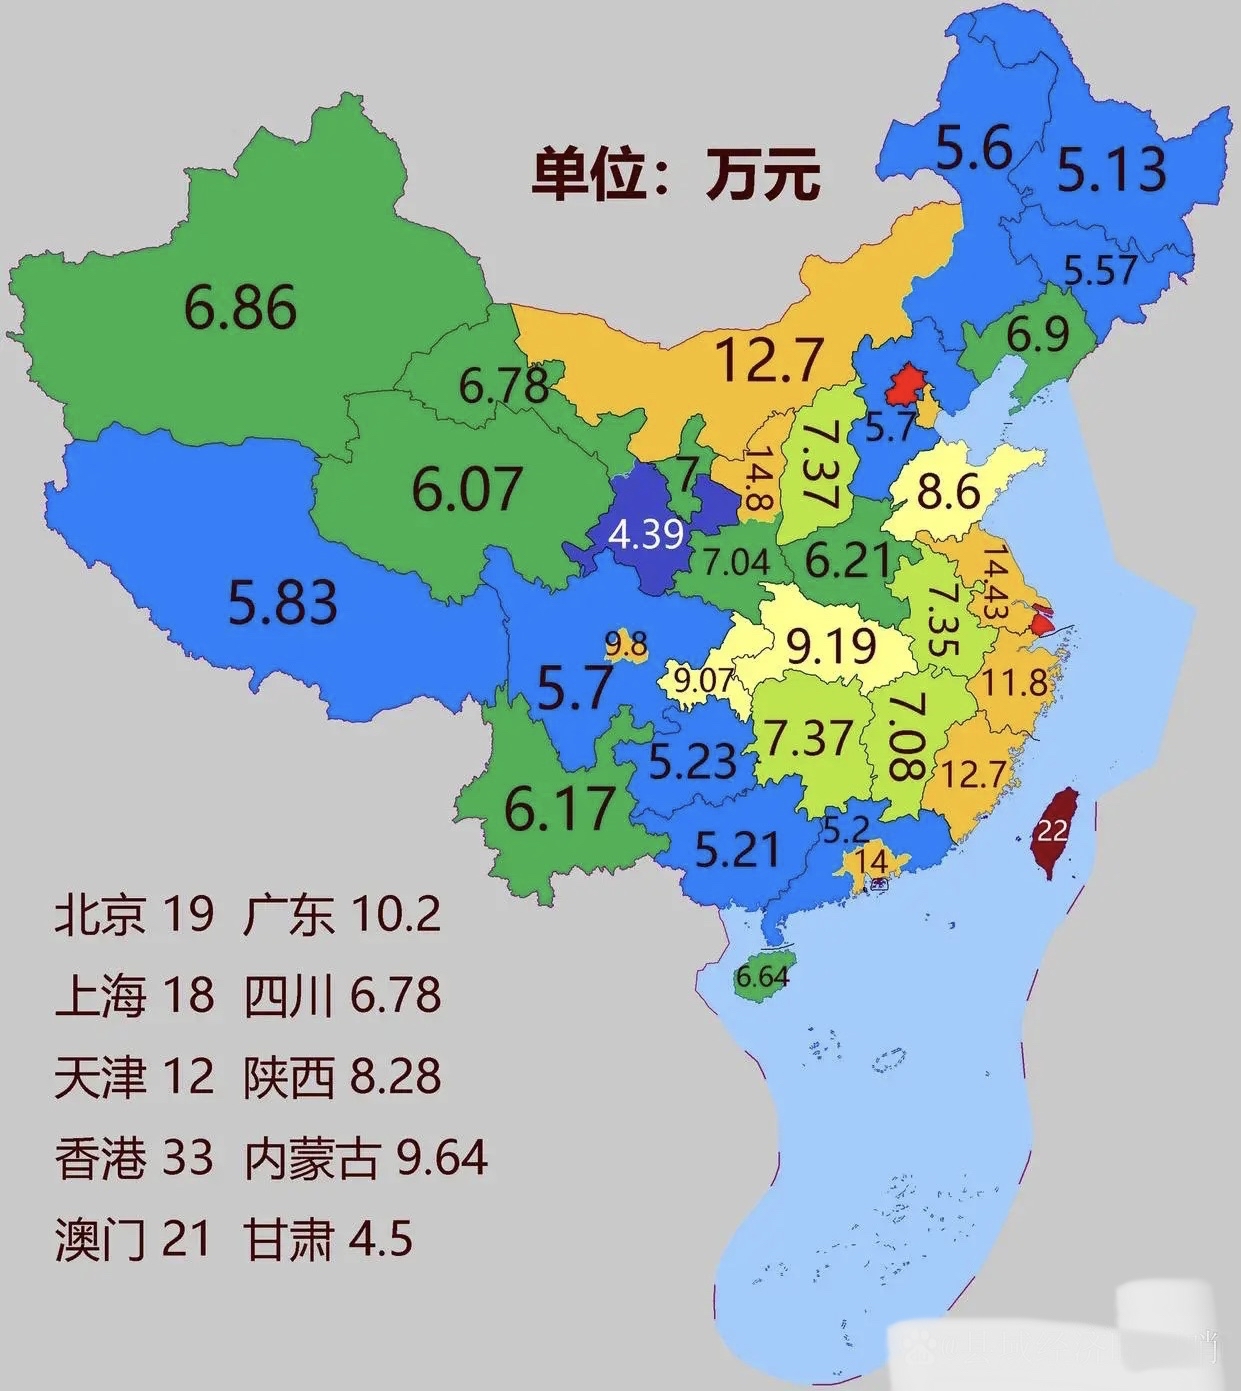 中国人均gdp排名图片